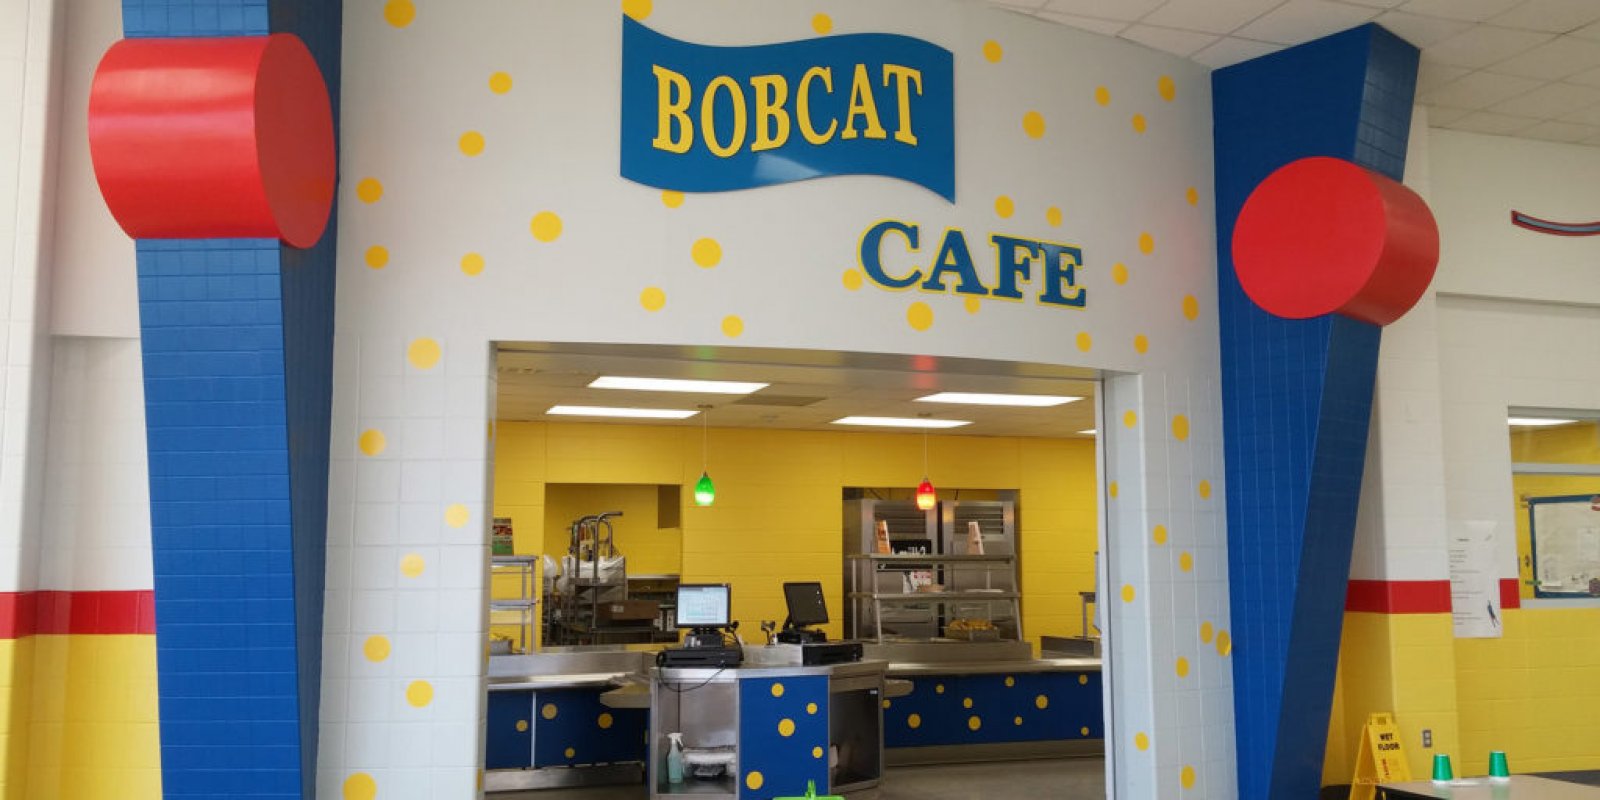 Bobcat Cafe